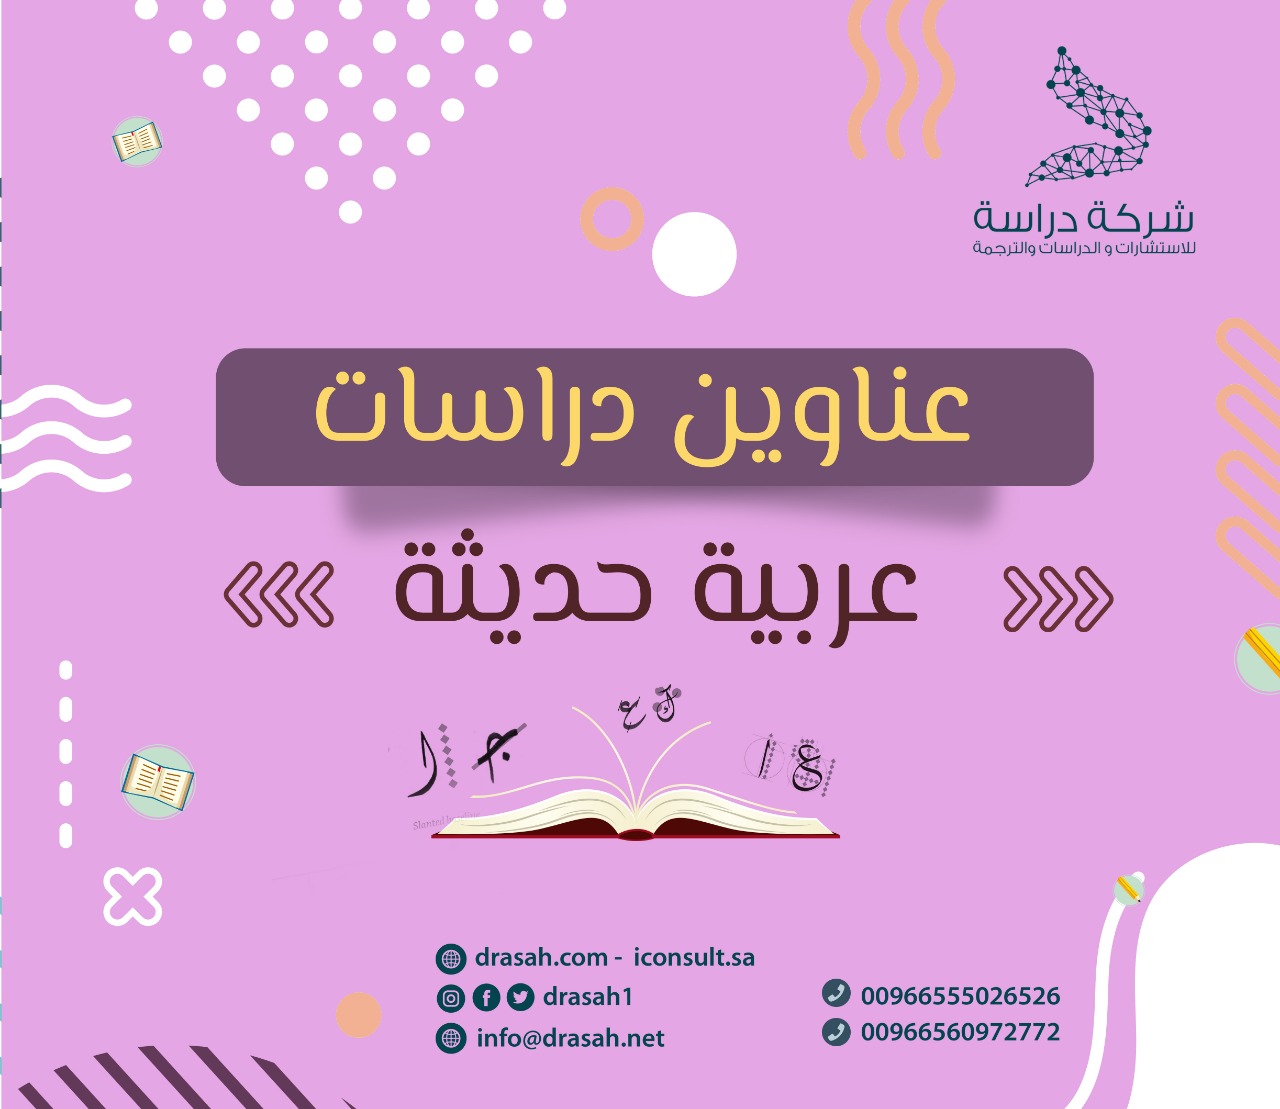 عناوين دراسات سابقة عربية حول  المهام اللغوية و إشباع حاجات الاتصال اللغوي